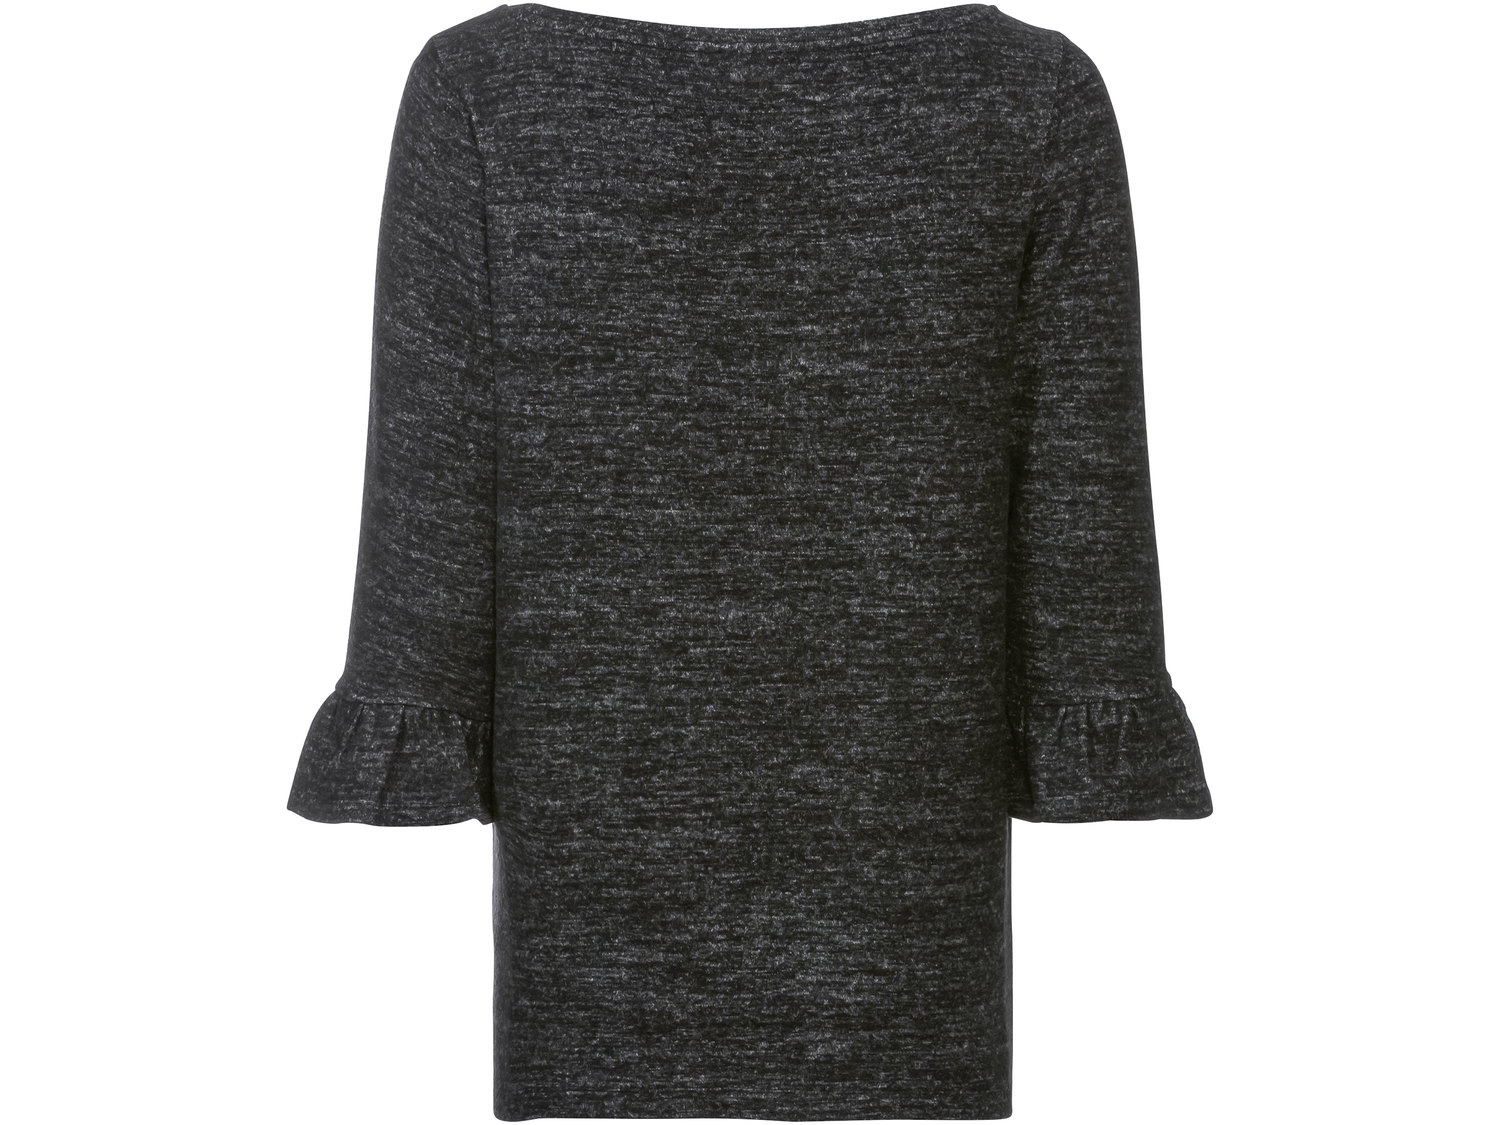 Sweter Esmara, cena 29,99 PLN 
- ozdobne perełki
- rozmiary: XS-L
- Hohenstein ...